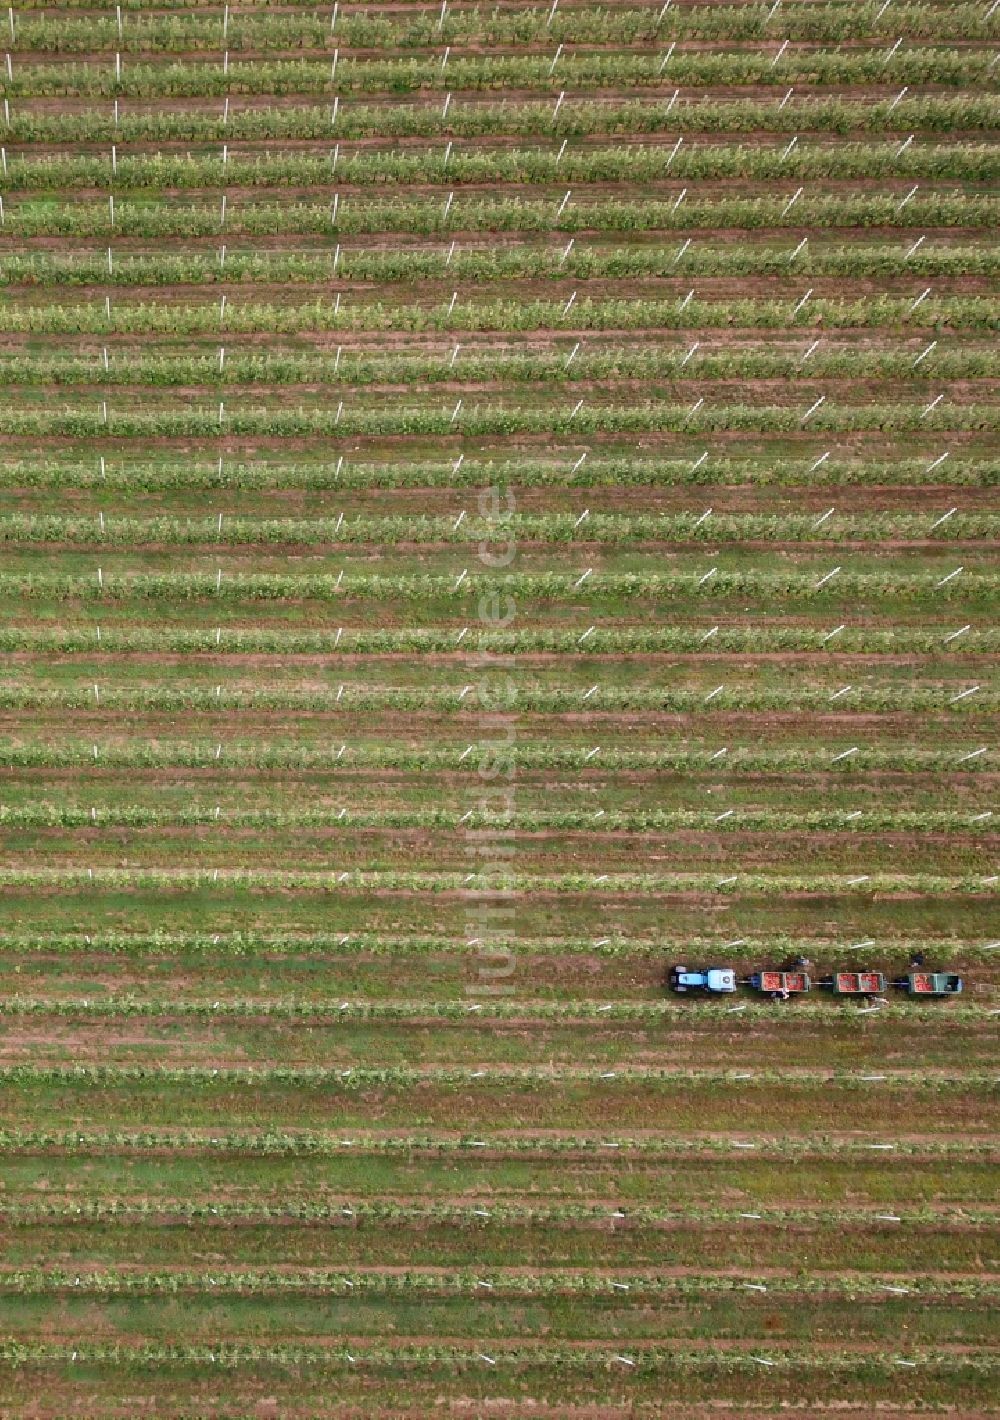 Erdeborn von oben - Arbeitseinsatz zur Apfelernte mit Erntehelfern auf landwirtschaftlichen Feld- Reihen in Erdeborn im Bundesland Sachsen-Anhalt, Deutschland